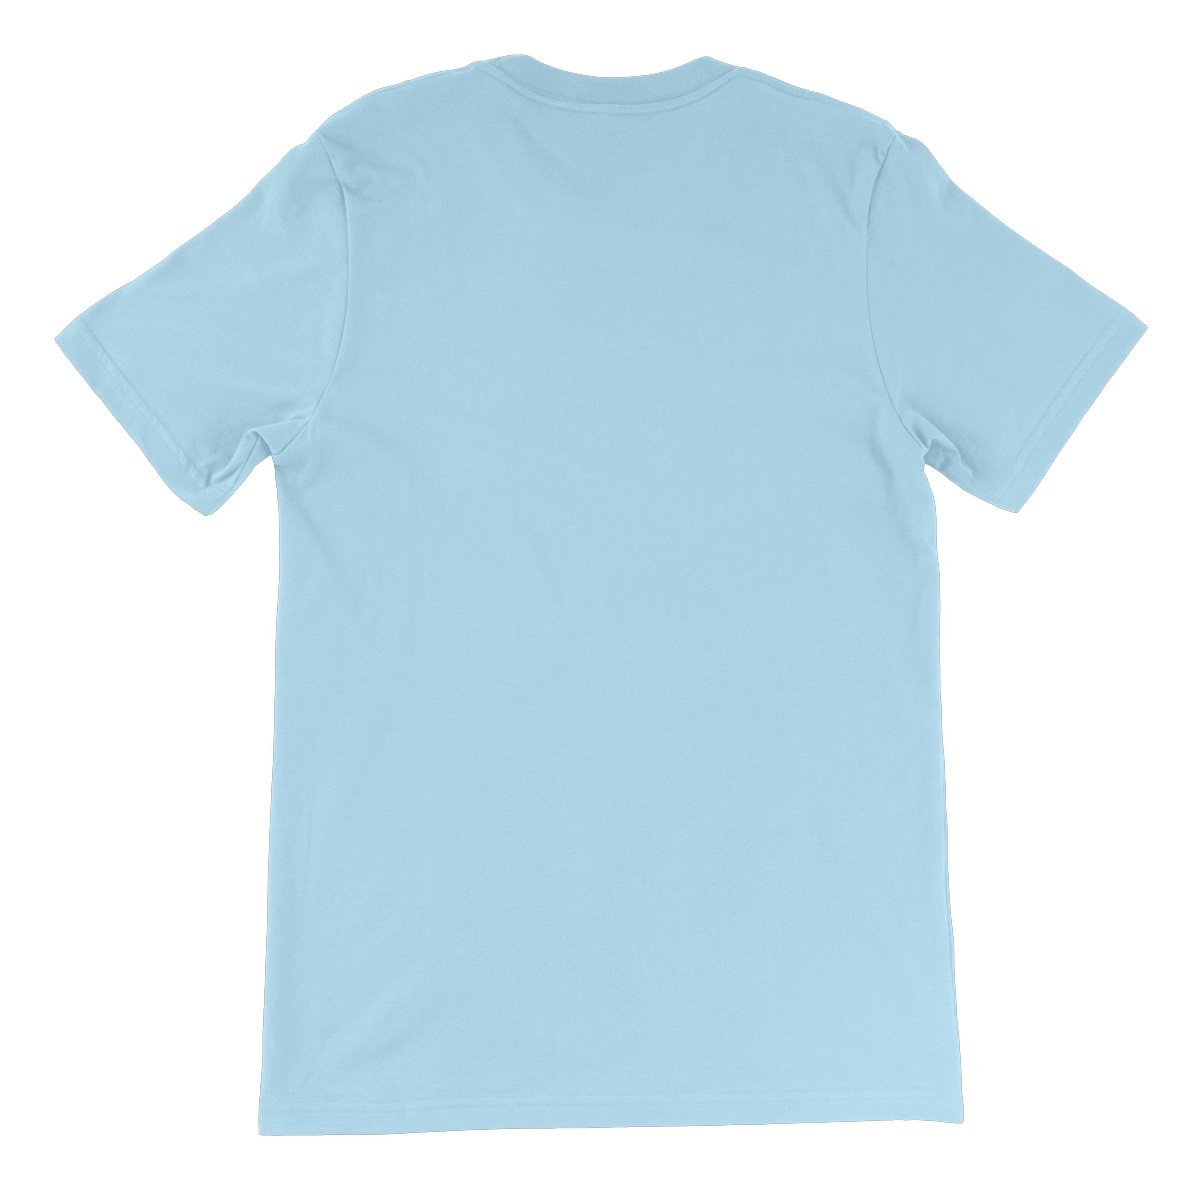 Unisex Premium T-Shirt - 'S'up?'